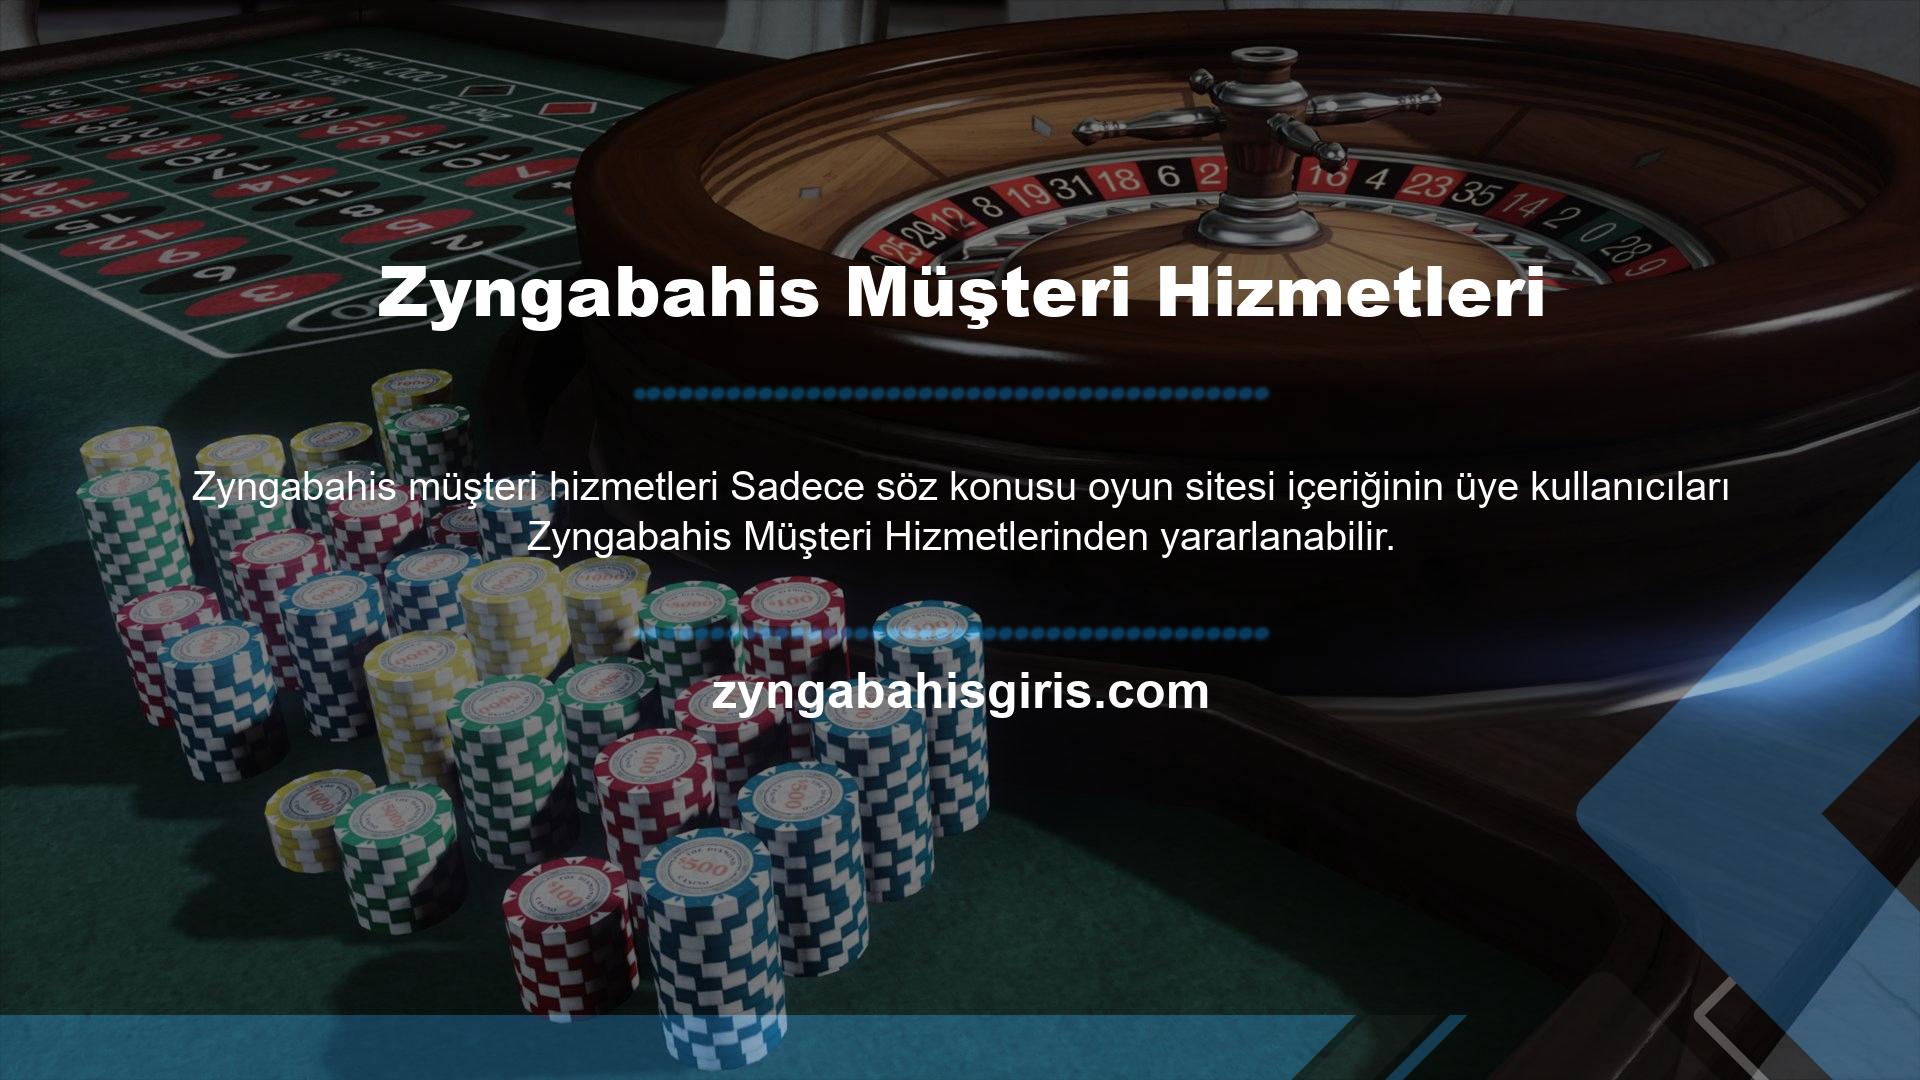 Zyngabahis, kullanıcılarına çeşitli casino ve slot fırsatlarının yanı sıra para yatırma, çekme ve çeşitli bonus seçenekleri gibi fırsatları da içeren güvenilir bir bahis deneyimi vaat ediyor